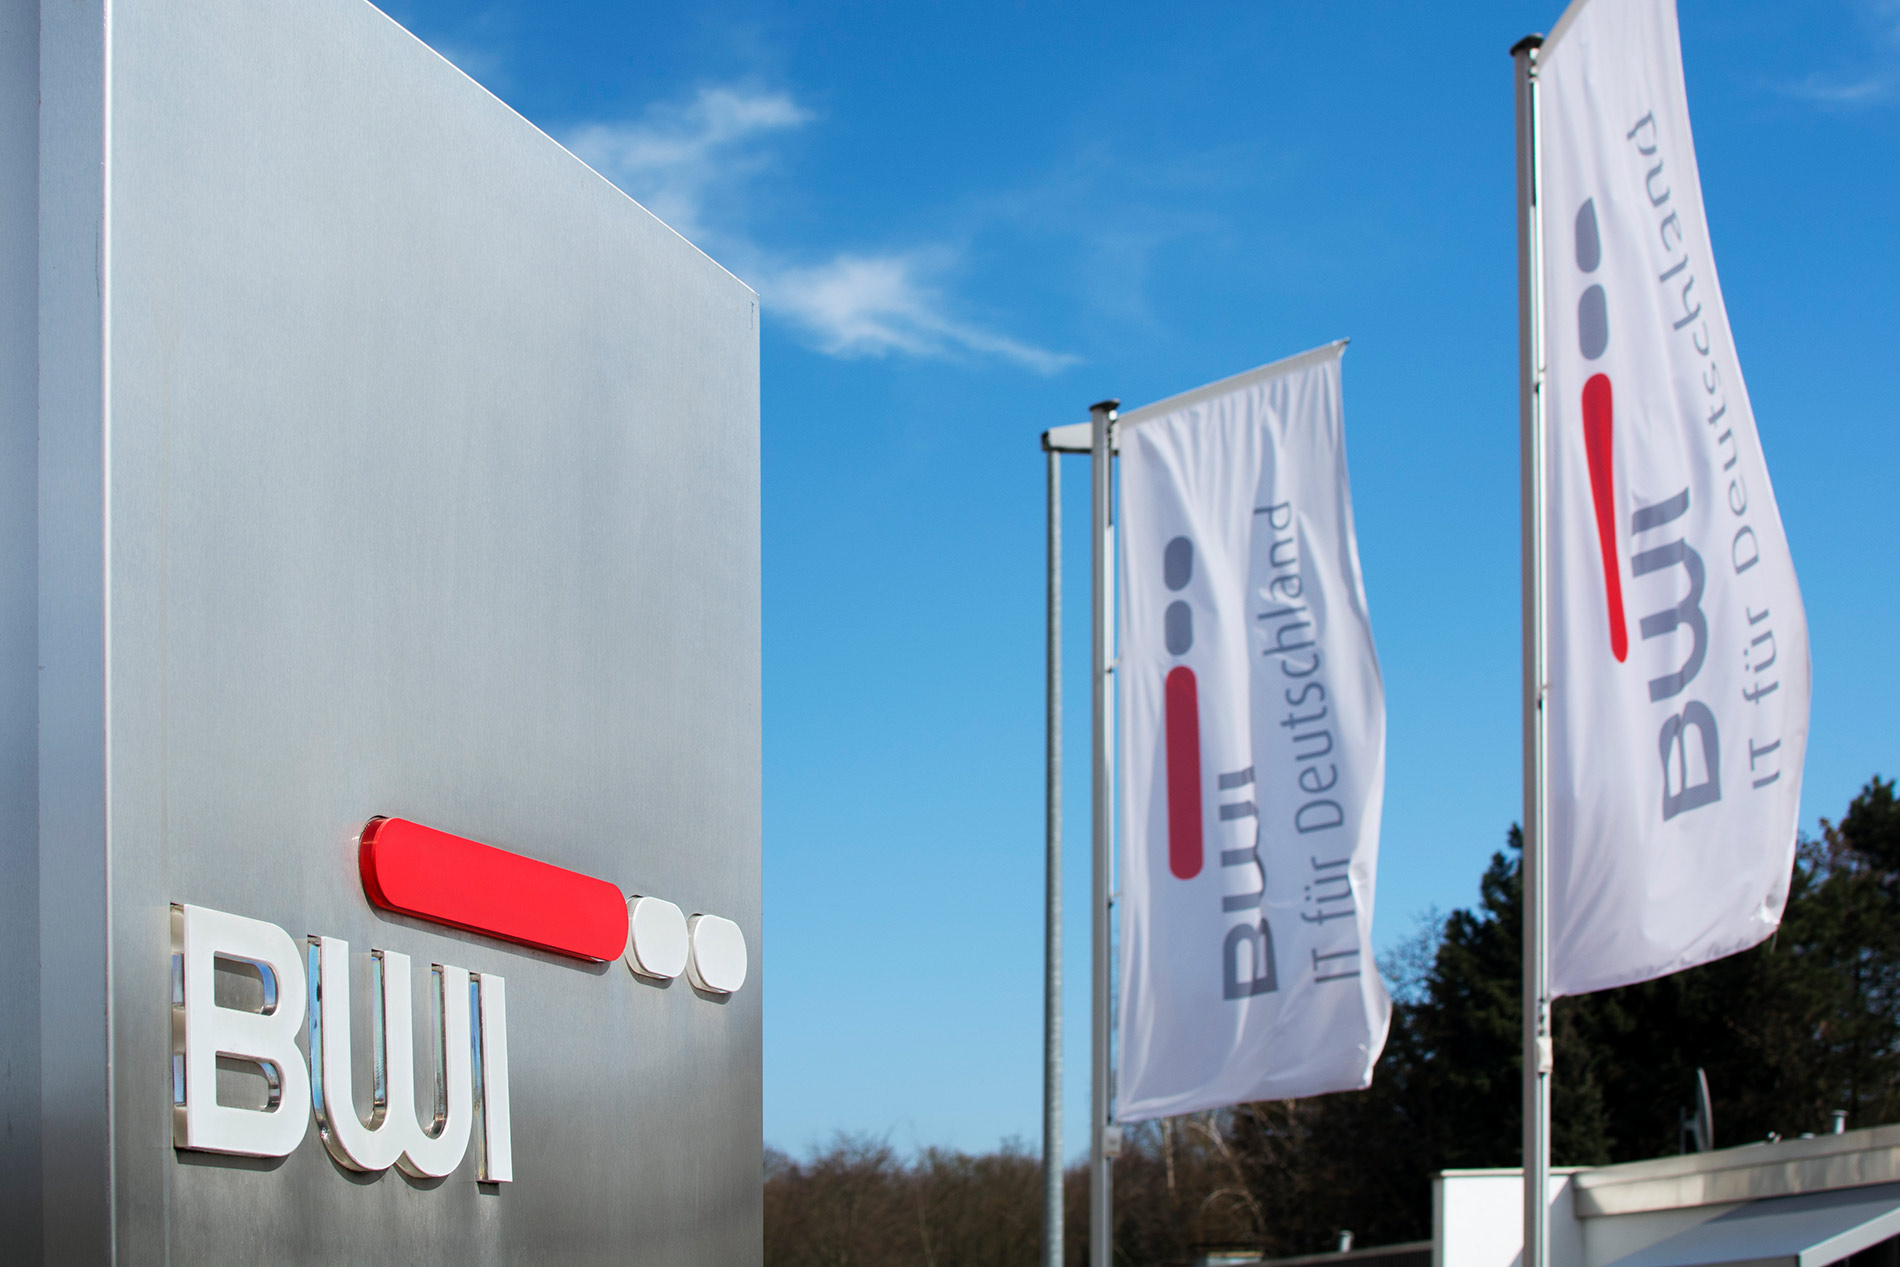 BWI viertgrößter interner IT-Dienstleister in Deutschland